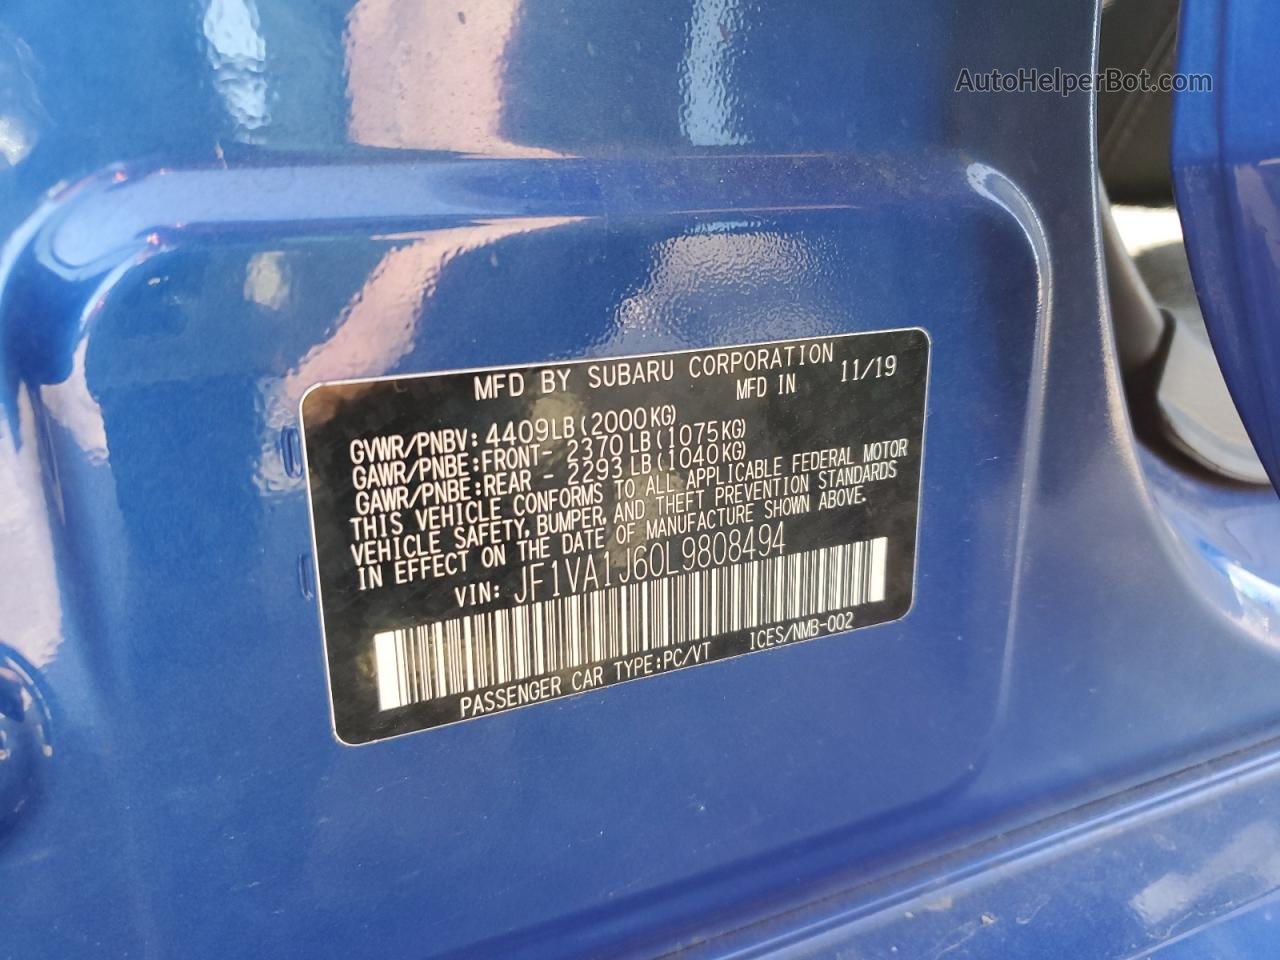 2020 Subaru Wrx Limited Blue vin: JF1VA1J60L9808494